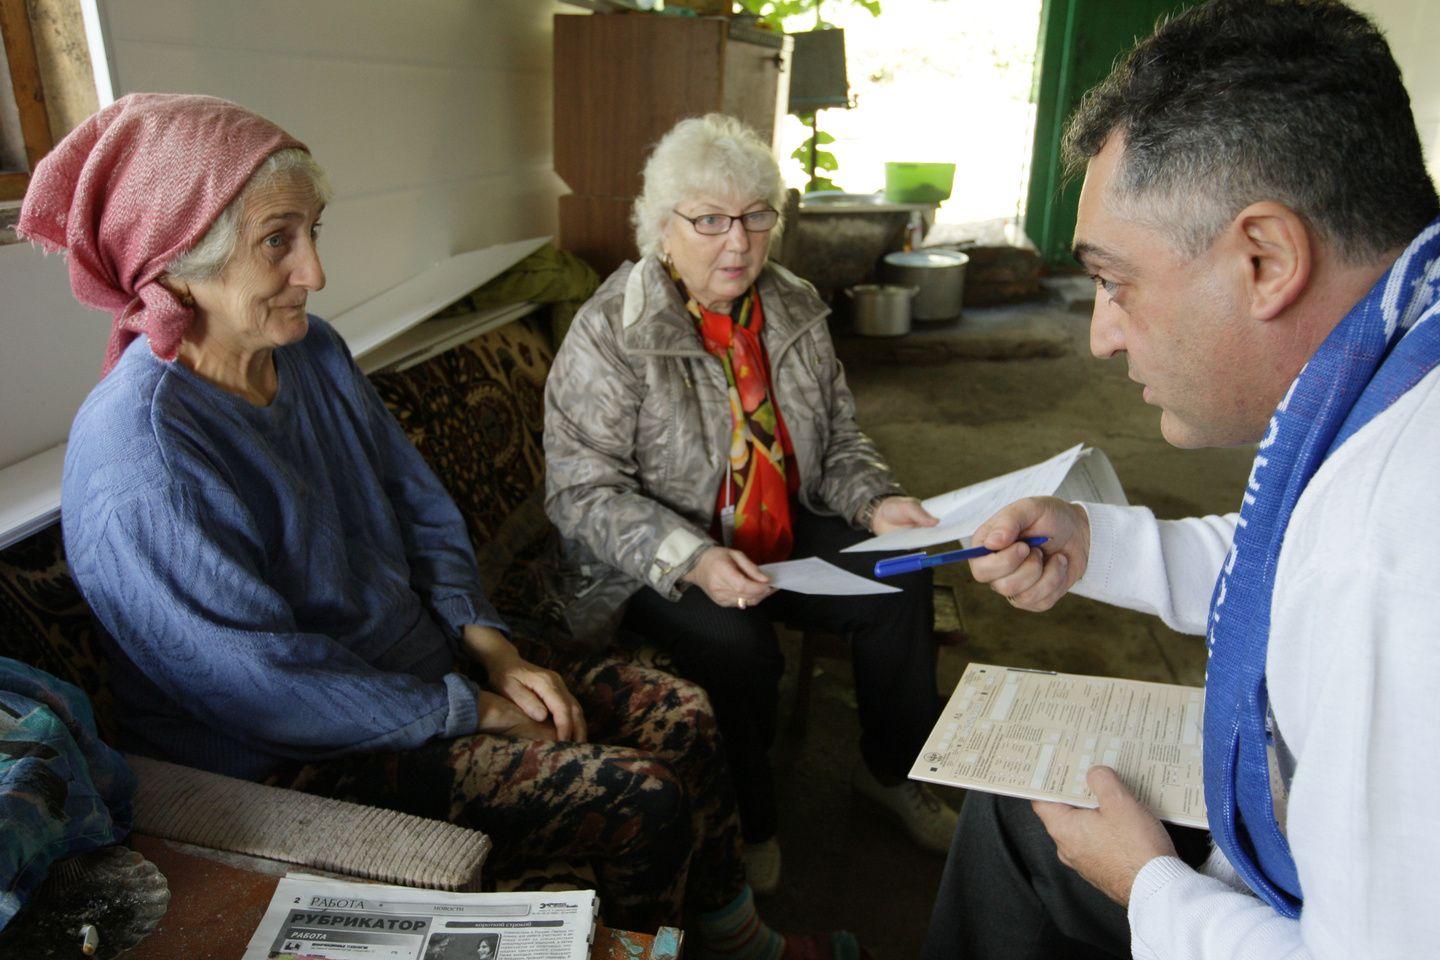 Кыргызстанцам зададут необычные вопросы в ходе переписи населения